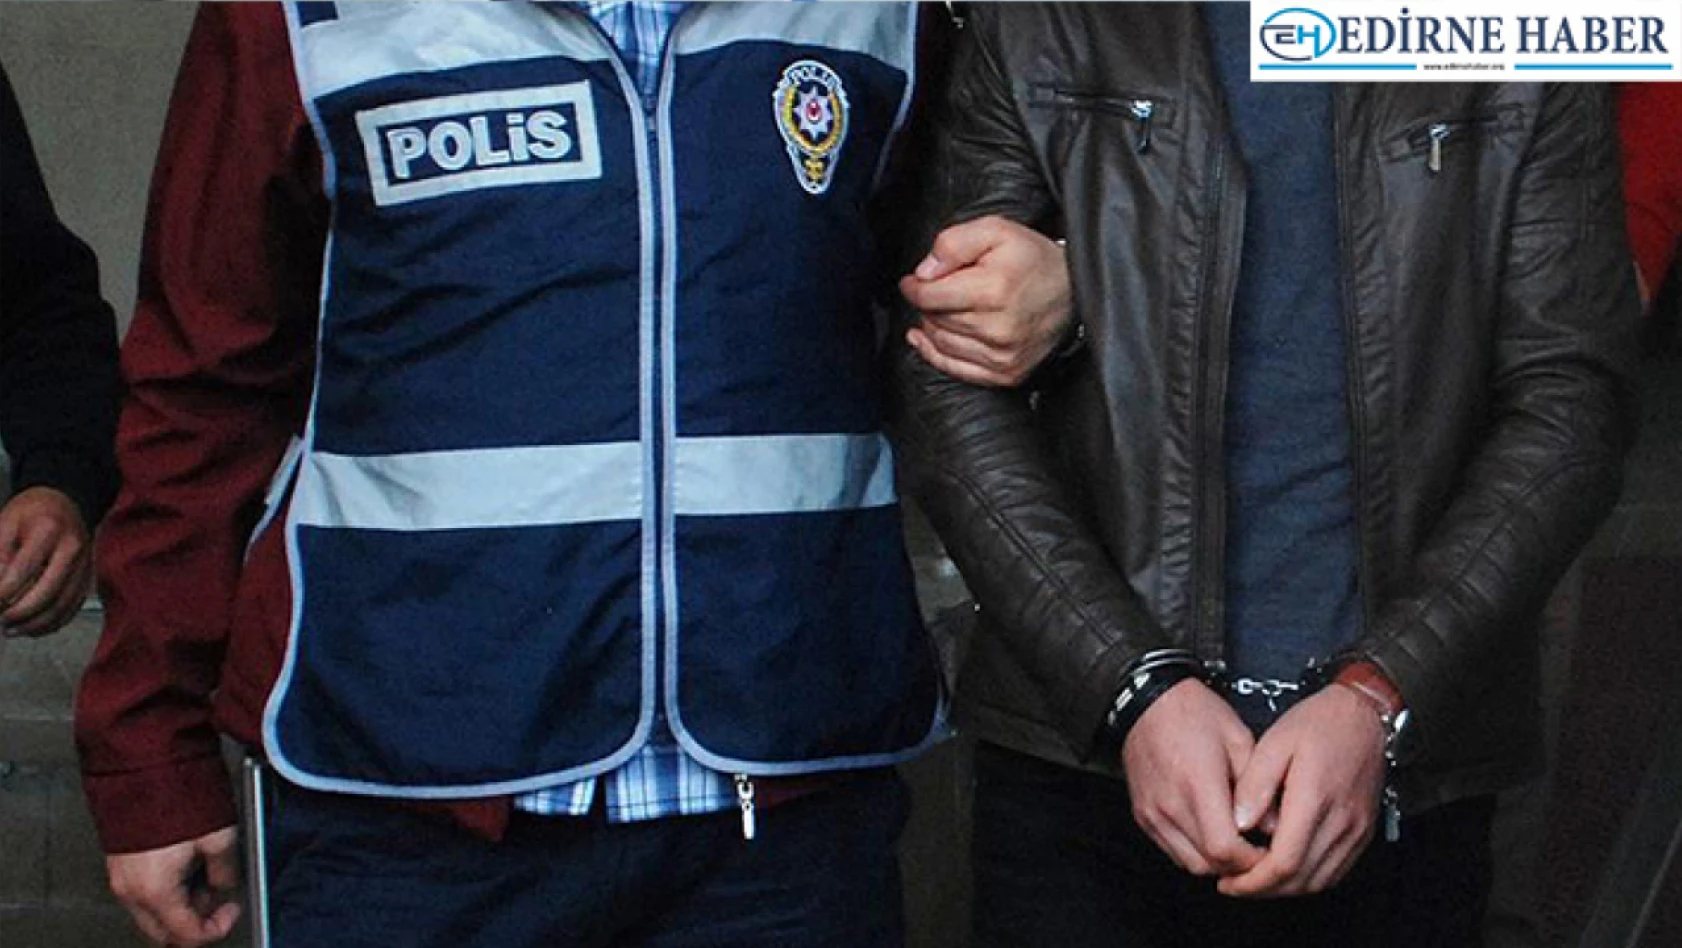 Edirne'de 6 suçtan aranan zanlı tutuklandı